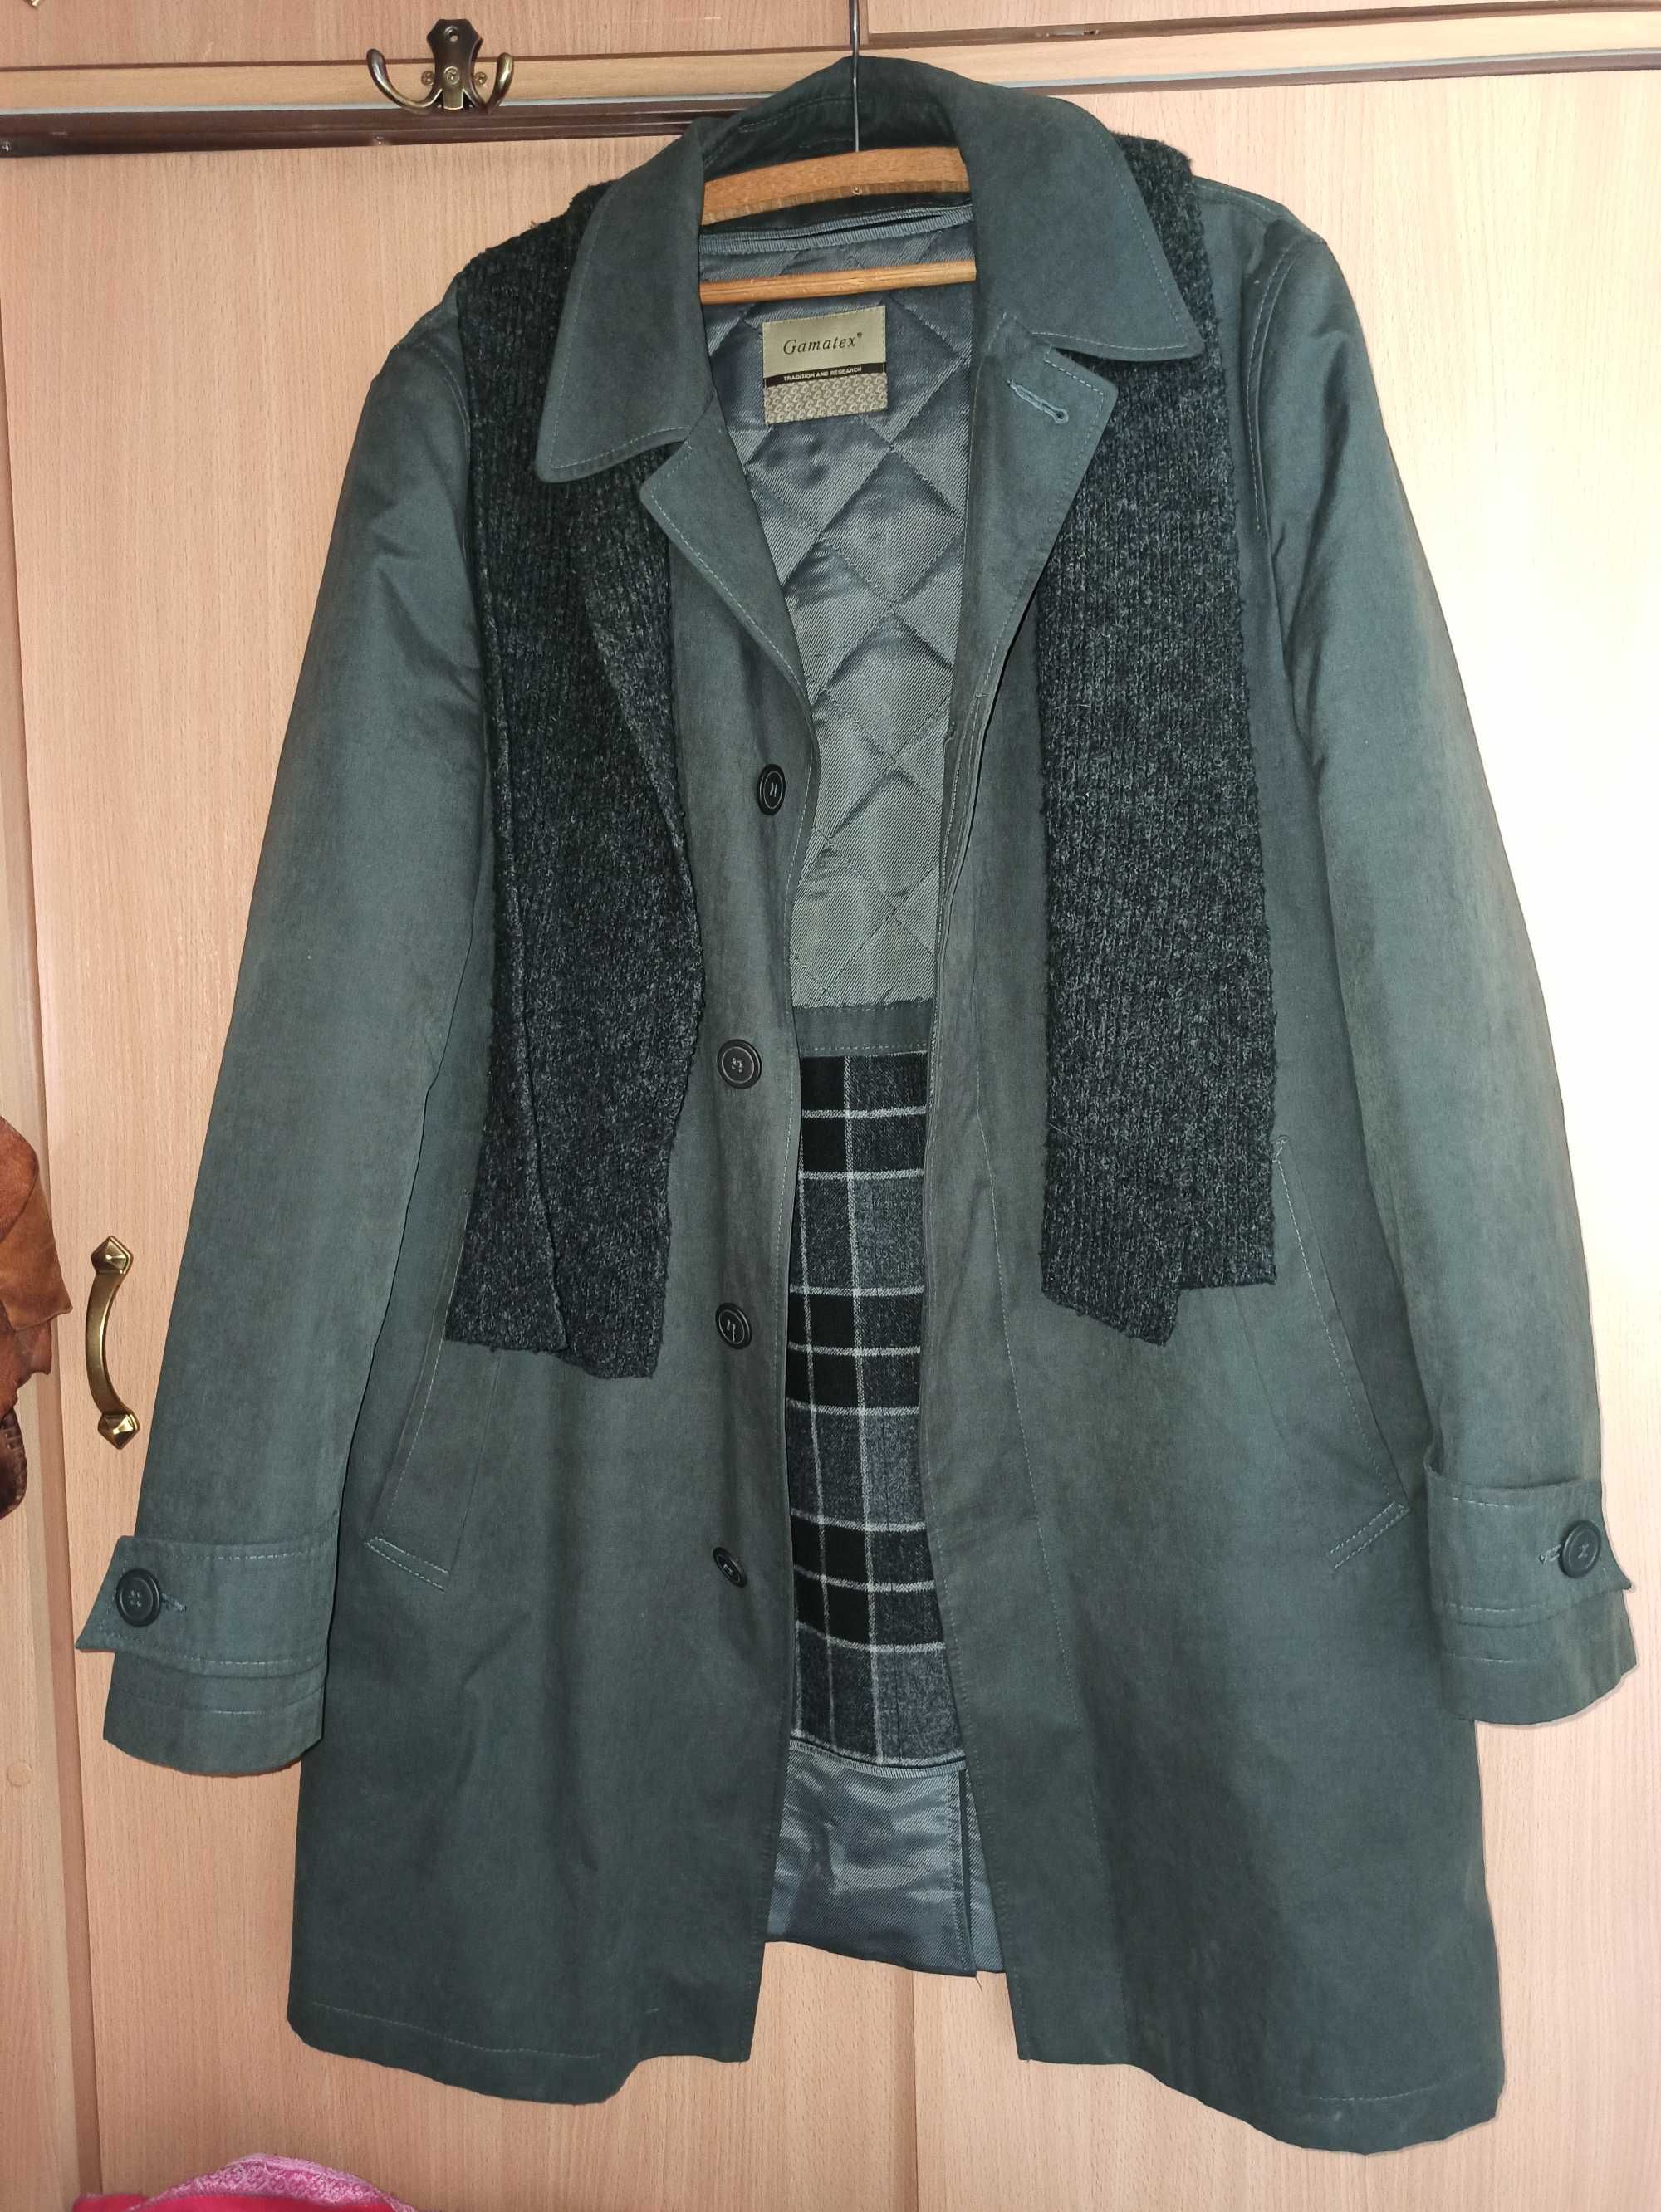 Elegancki biznesowy płaszcz męski Gamatex rozmiar 50